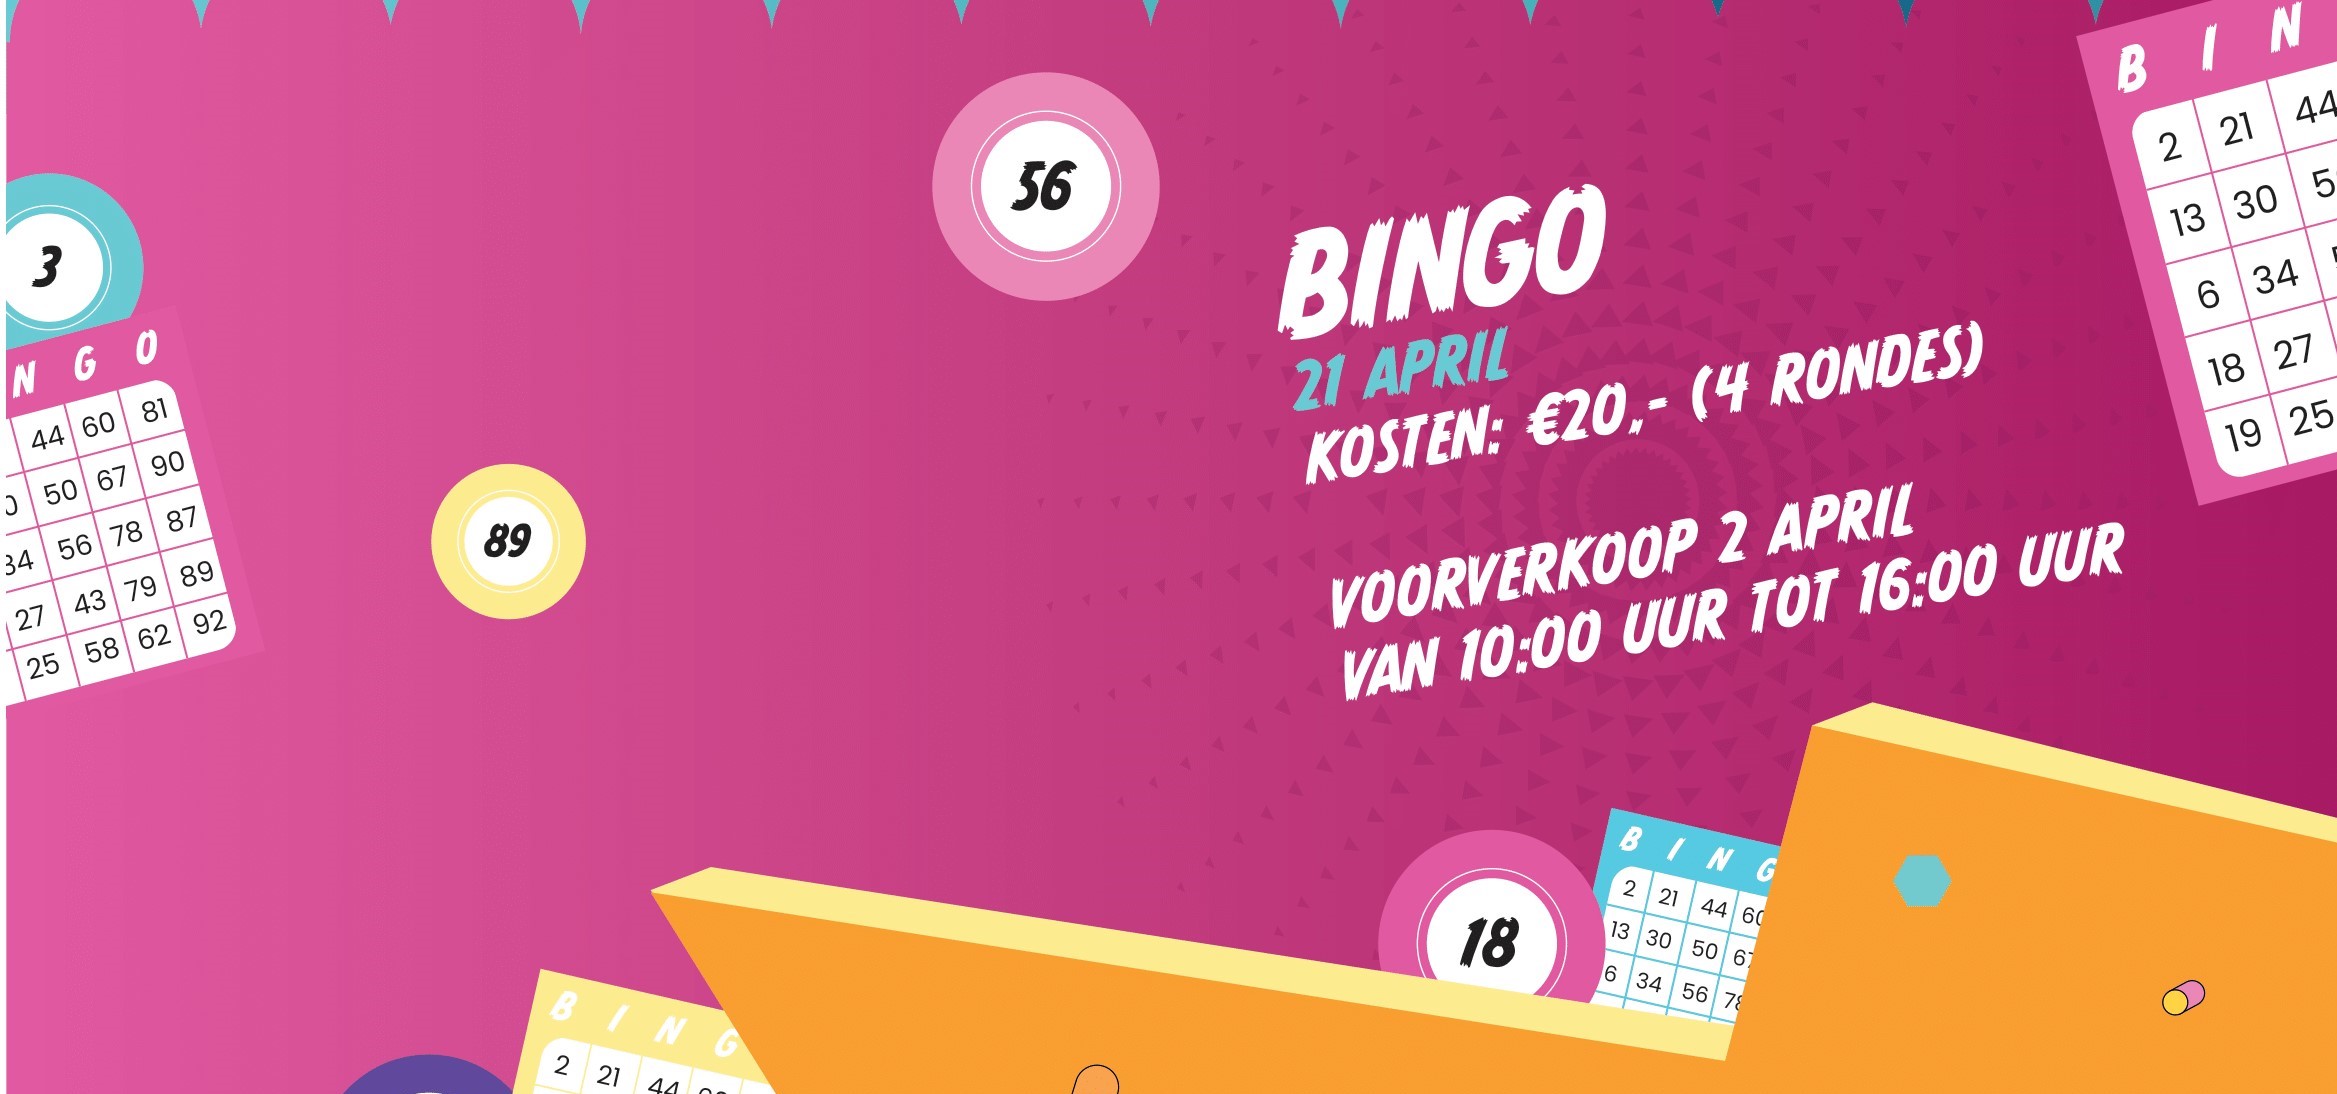 Poster bingo en kingsnight 2022-1 - kopie